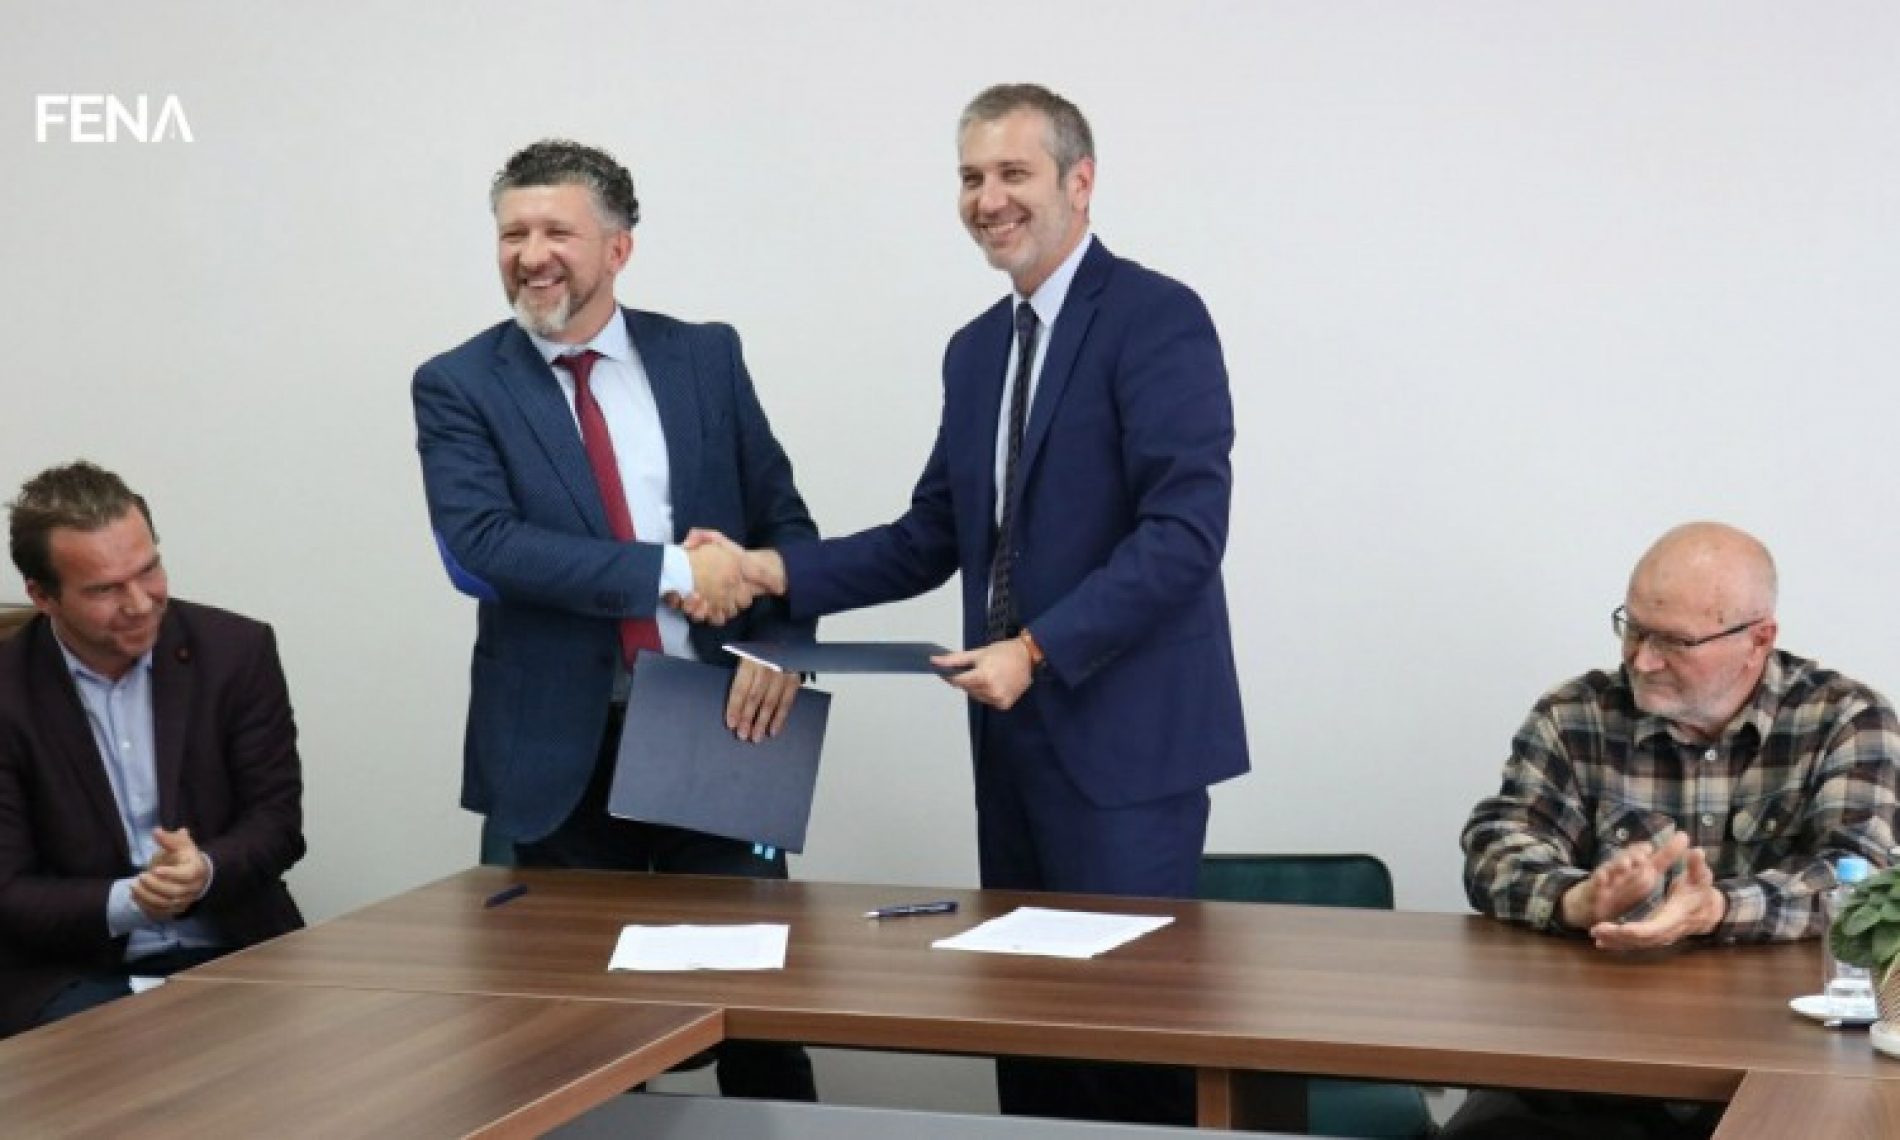 Potpisan Memorandum za izradu novog pravopisa bosanskog jezika